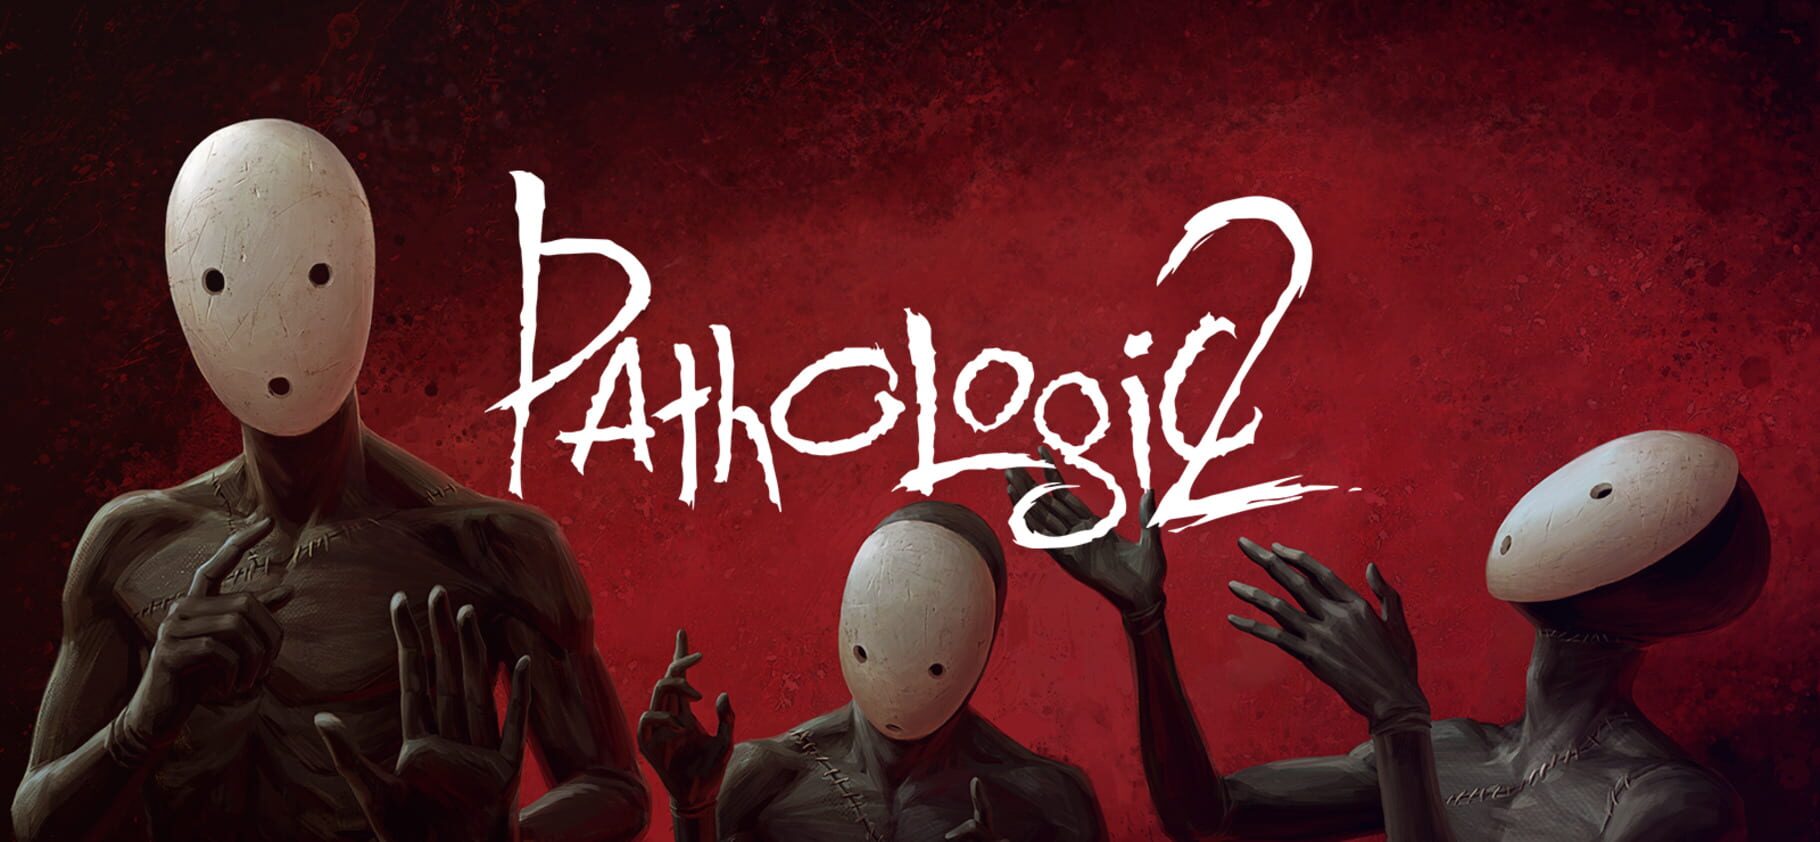 Pathologic 2 Image